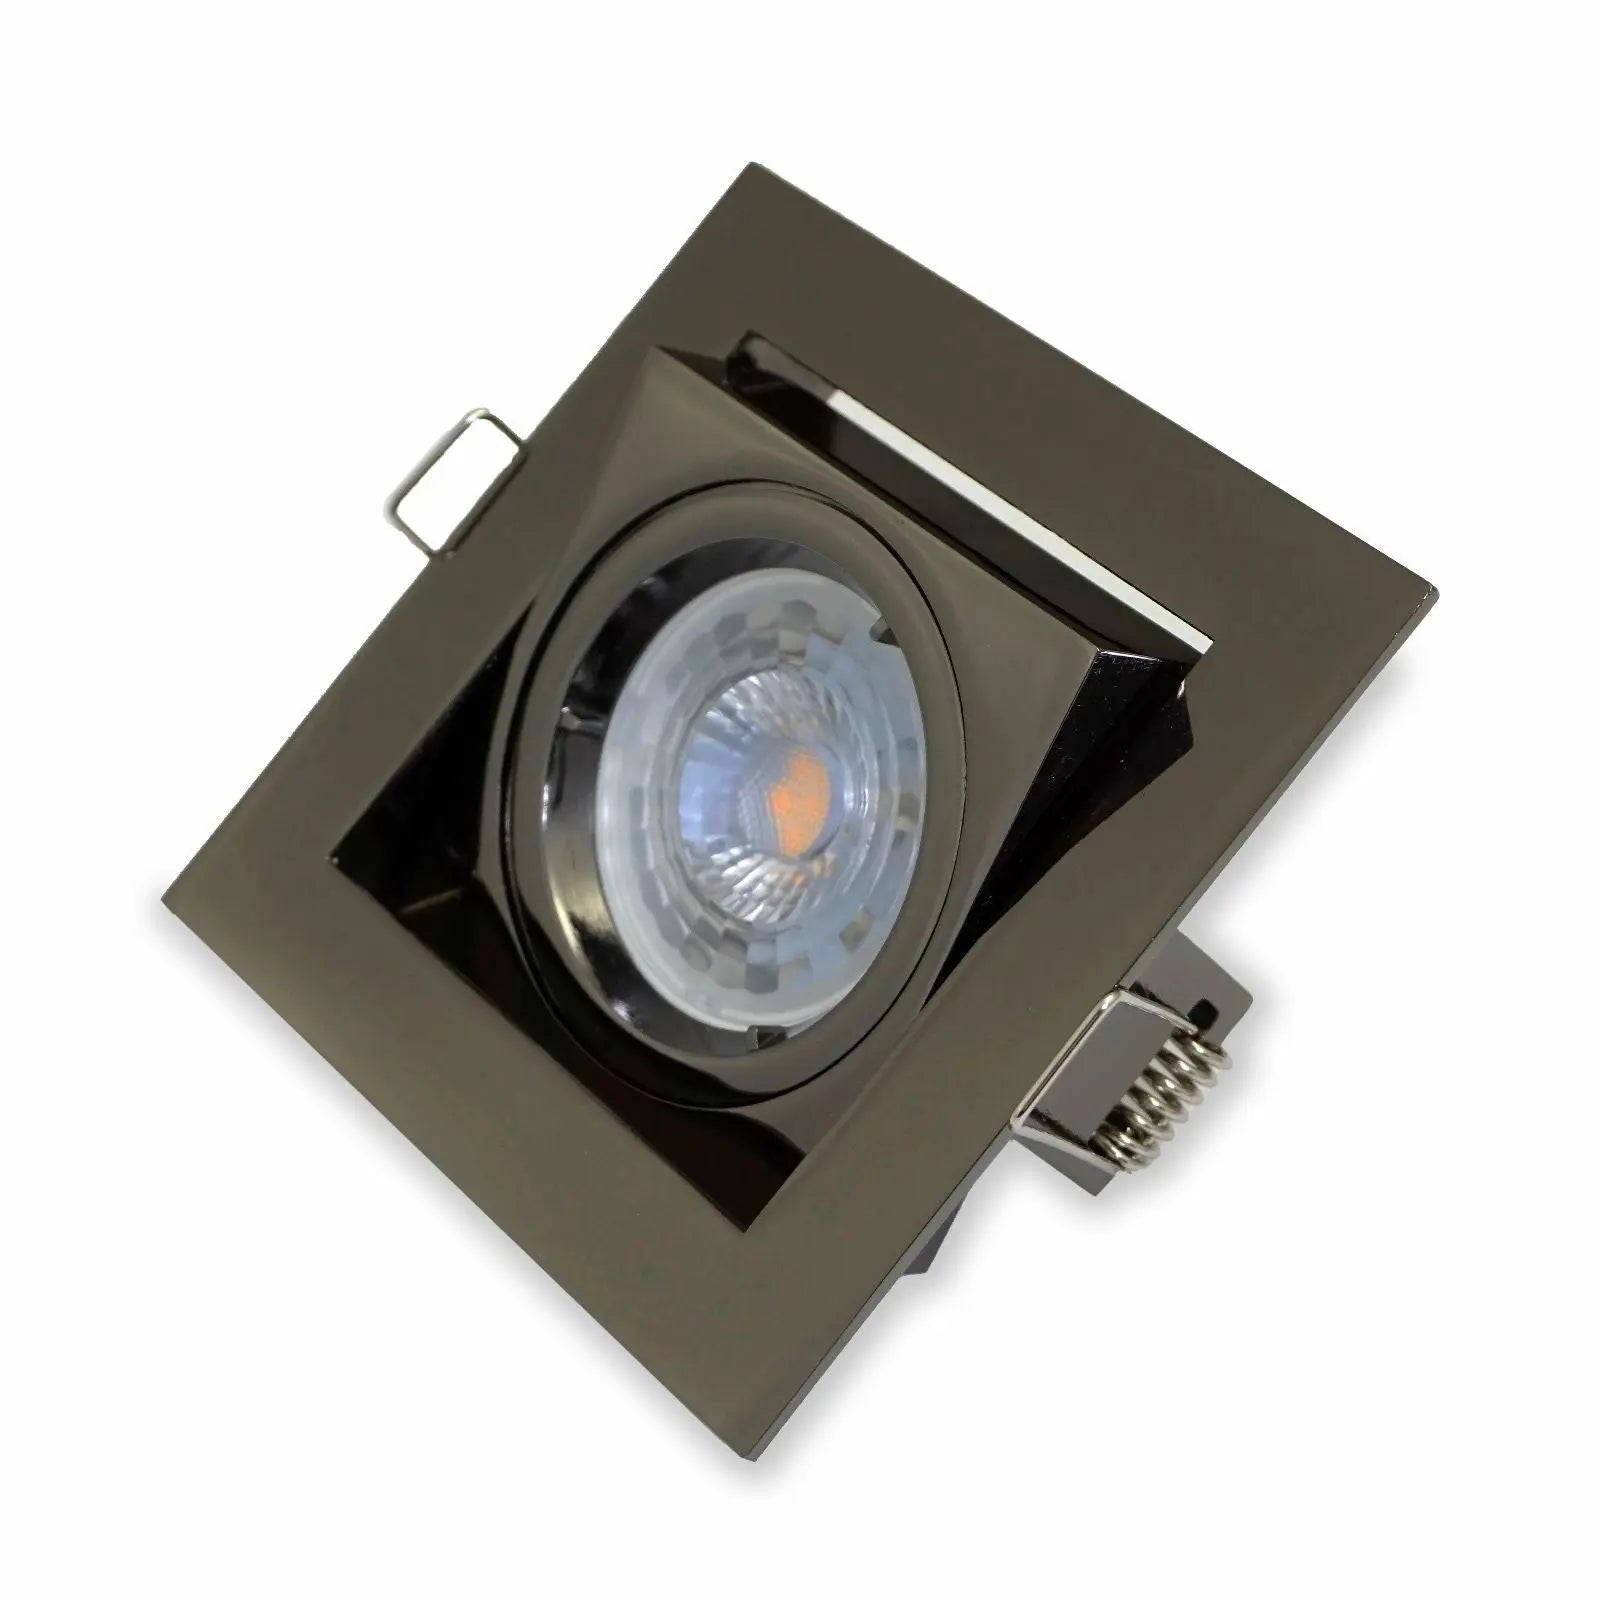 10X Black chrome Downlight Recessed Square  240V GU10, LED Tilted Ceiling Light UKEW